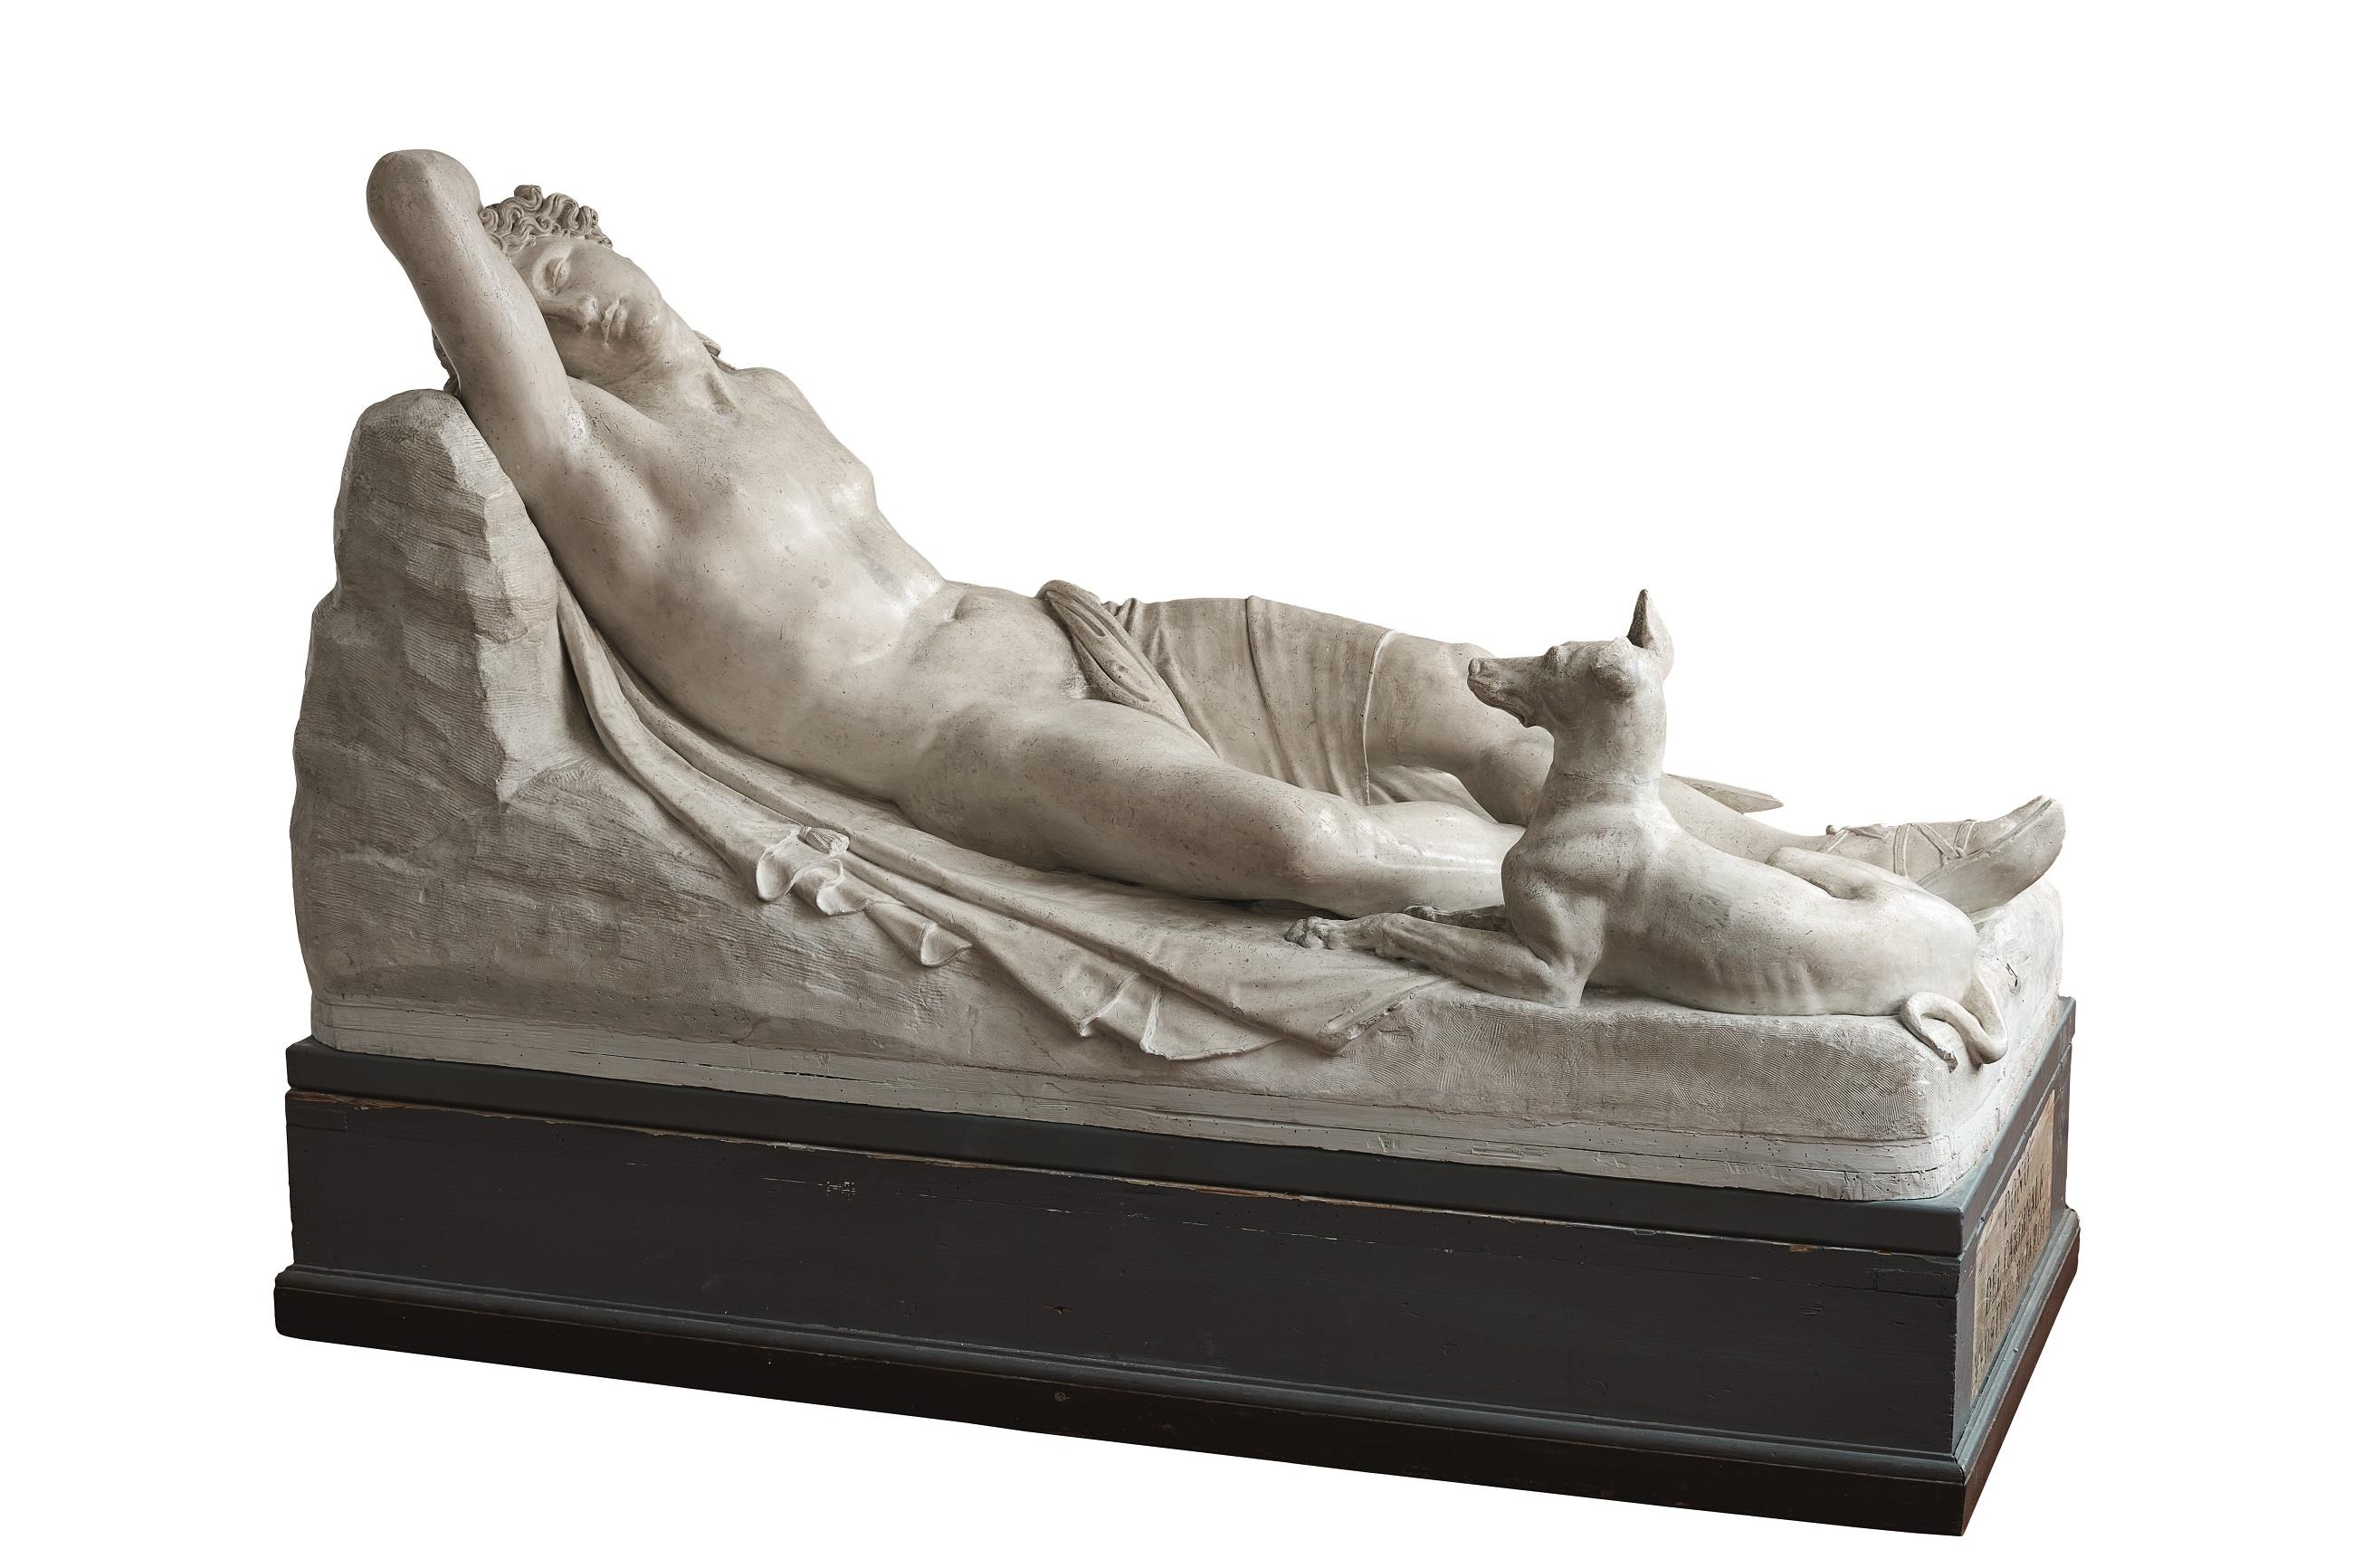 Antonio Canova, Endimione dormiente, 1819-1822, Gesso, 99x190x92 cm., Ravenna, Accademia di Belle Arti